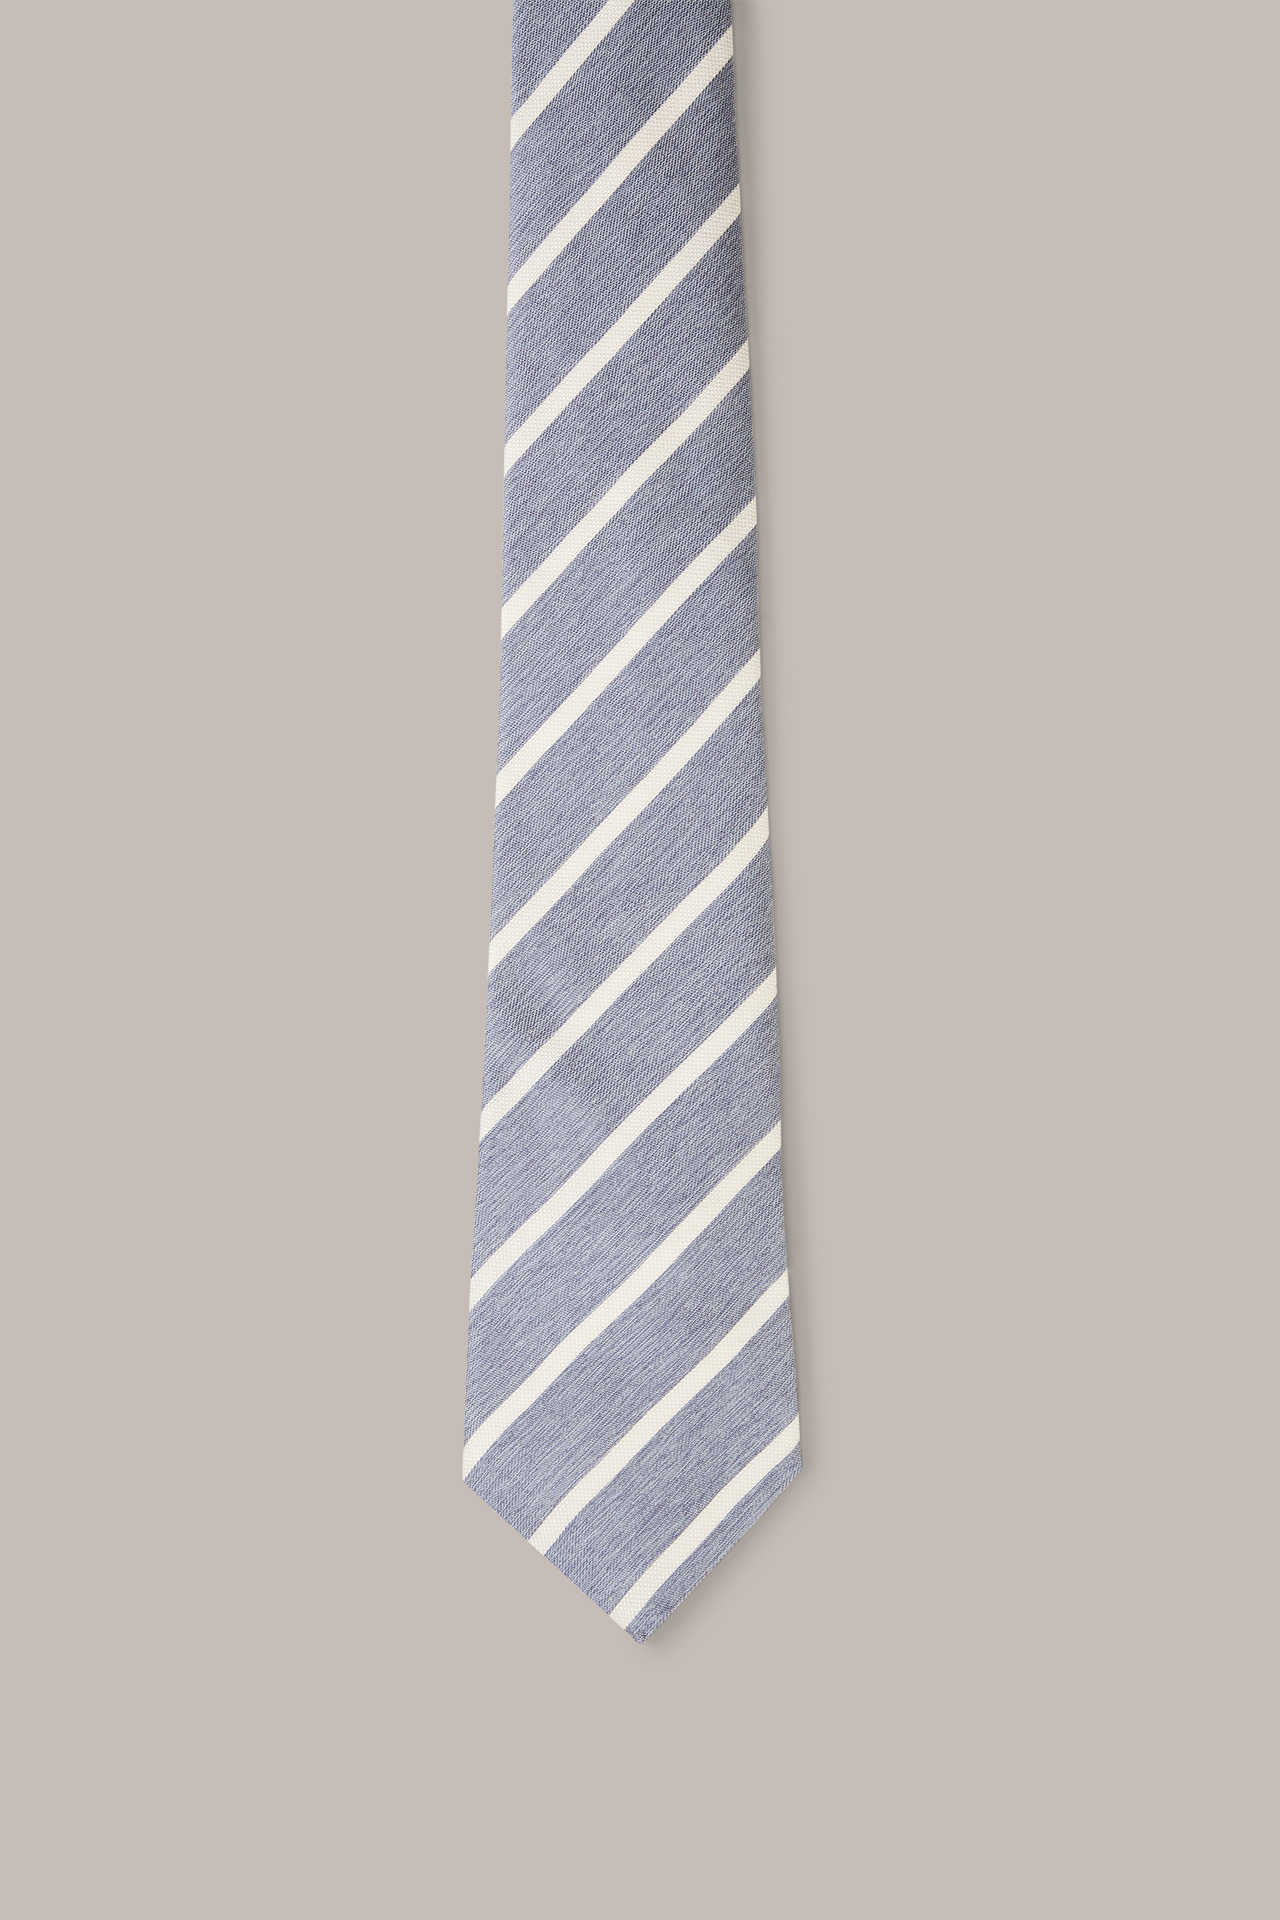 Cravate en coton et soie, en bleu et blanc à rayures